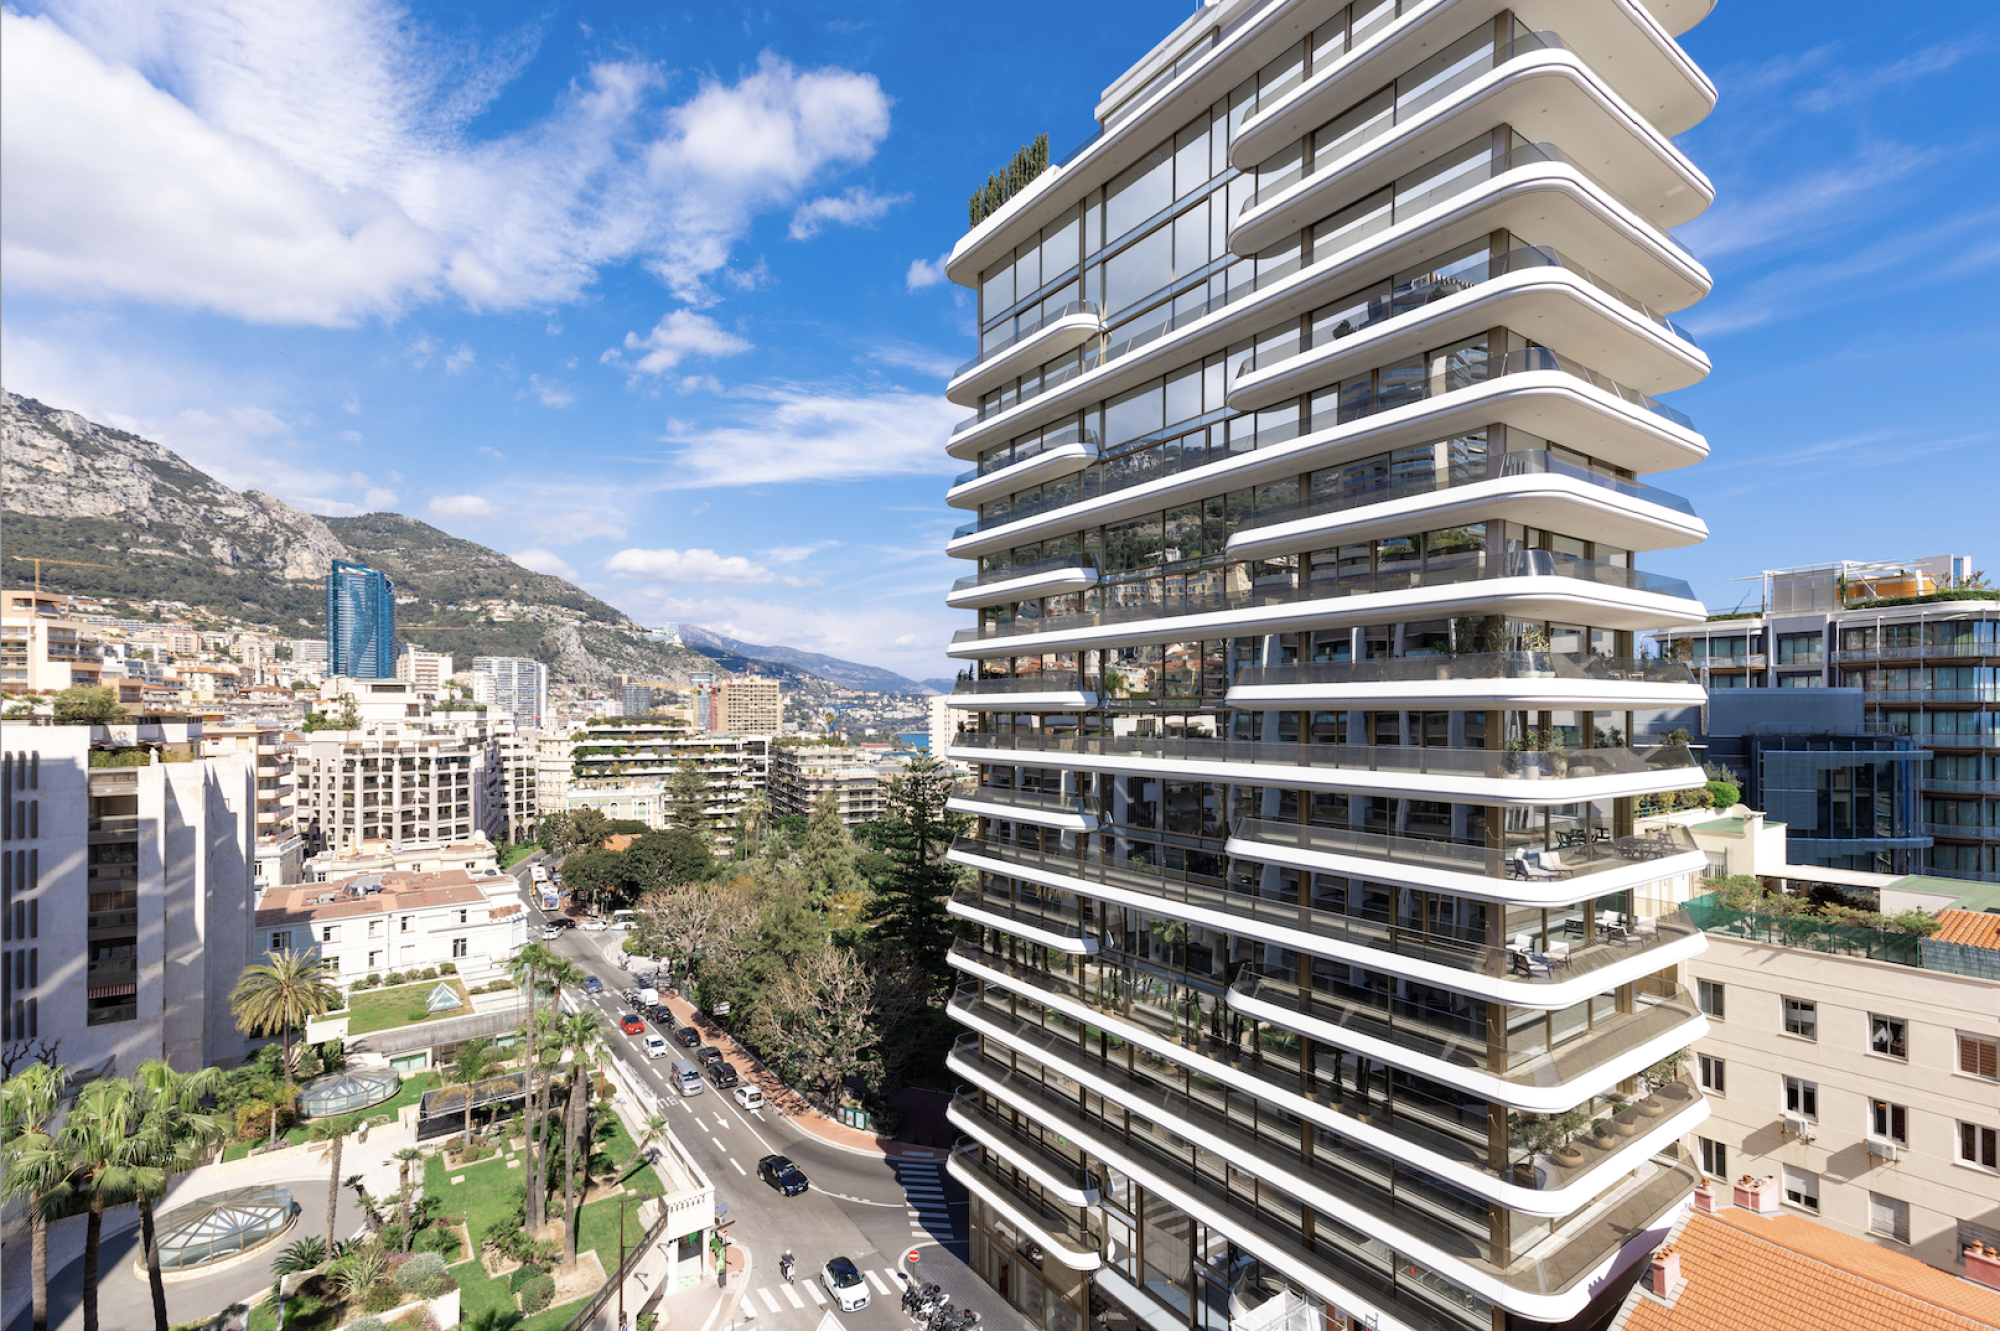 VERKOOP Appartement 2 SLPK Monaco - Carré d'Or / Twee terrassen met open zicht